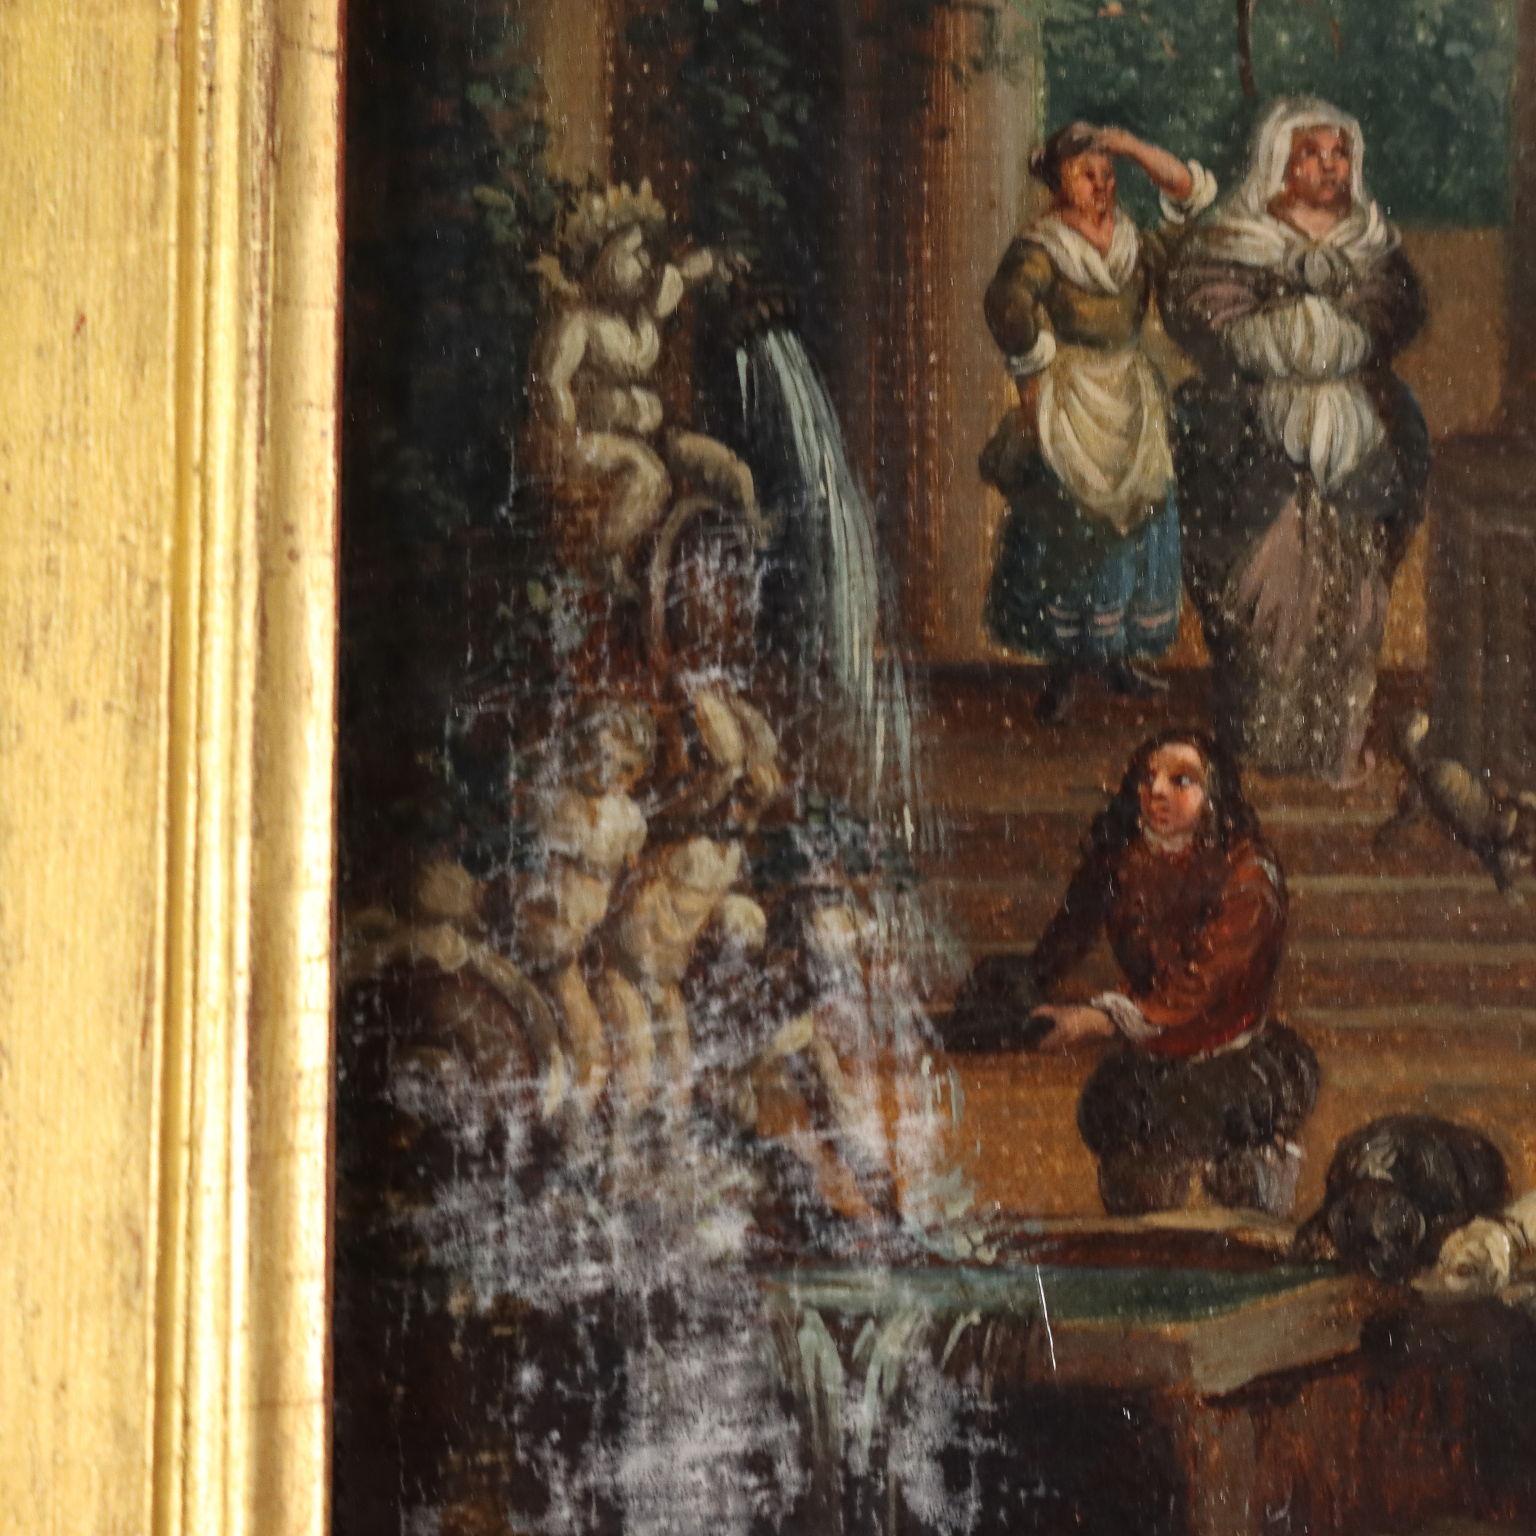 Olio su tela applicata a tavola. Scuola nord-europea del XVII-XVIII secolo.
Al retro è presente antica attribuzione a Peter Wouwerman (1623 -1682), giustificata dalla vicinanza ai modi pittorici dell'artista fiammingo, molto attento alla resa dei